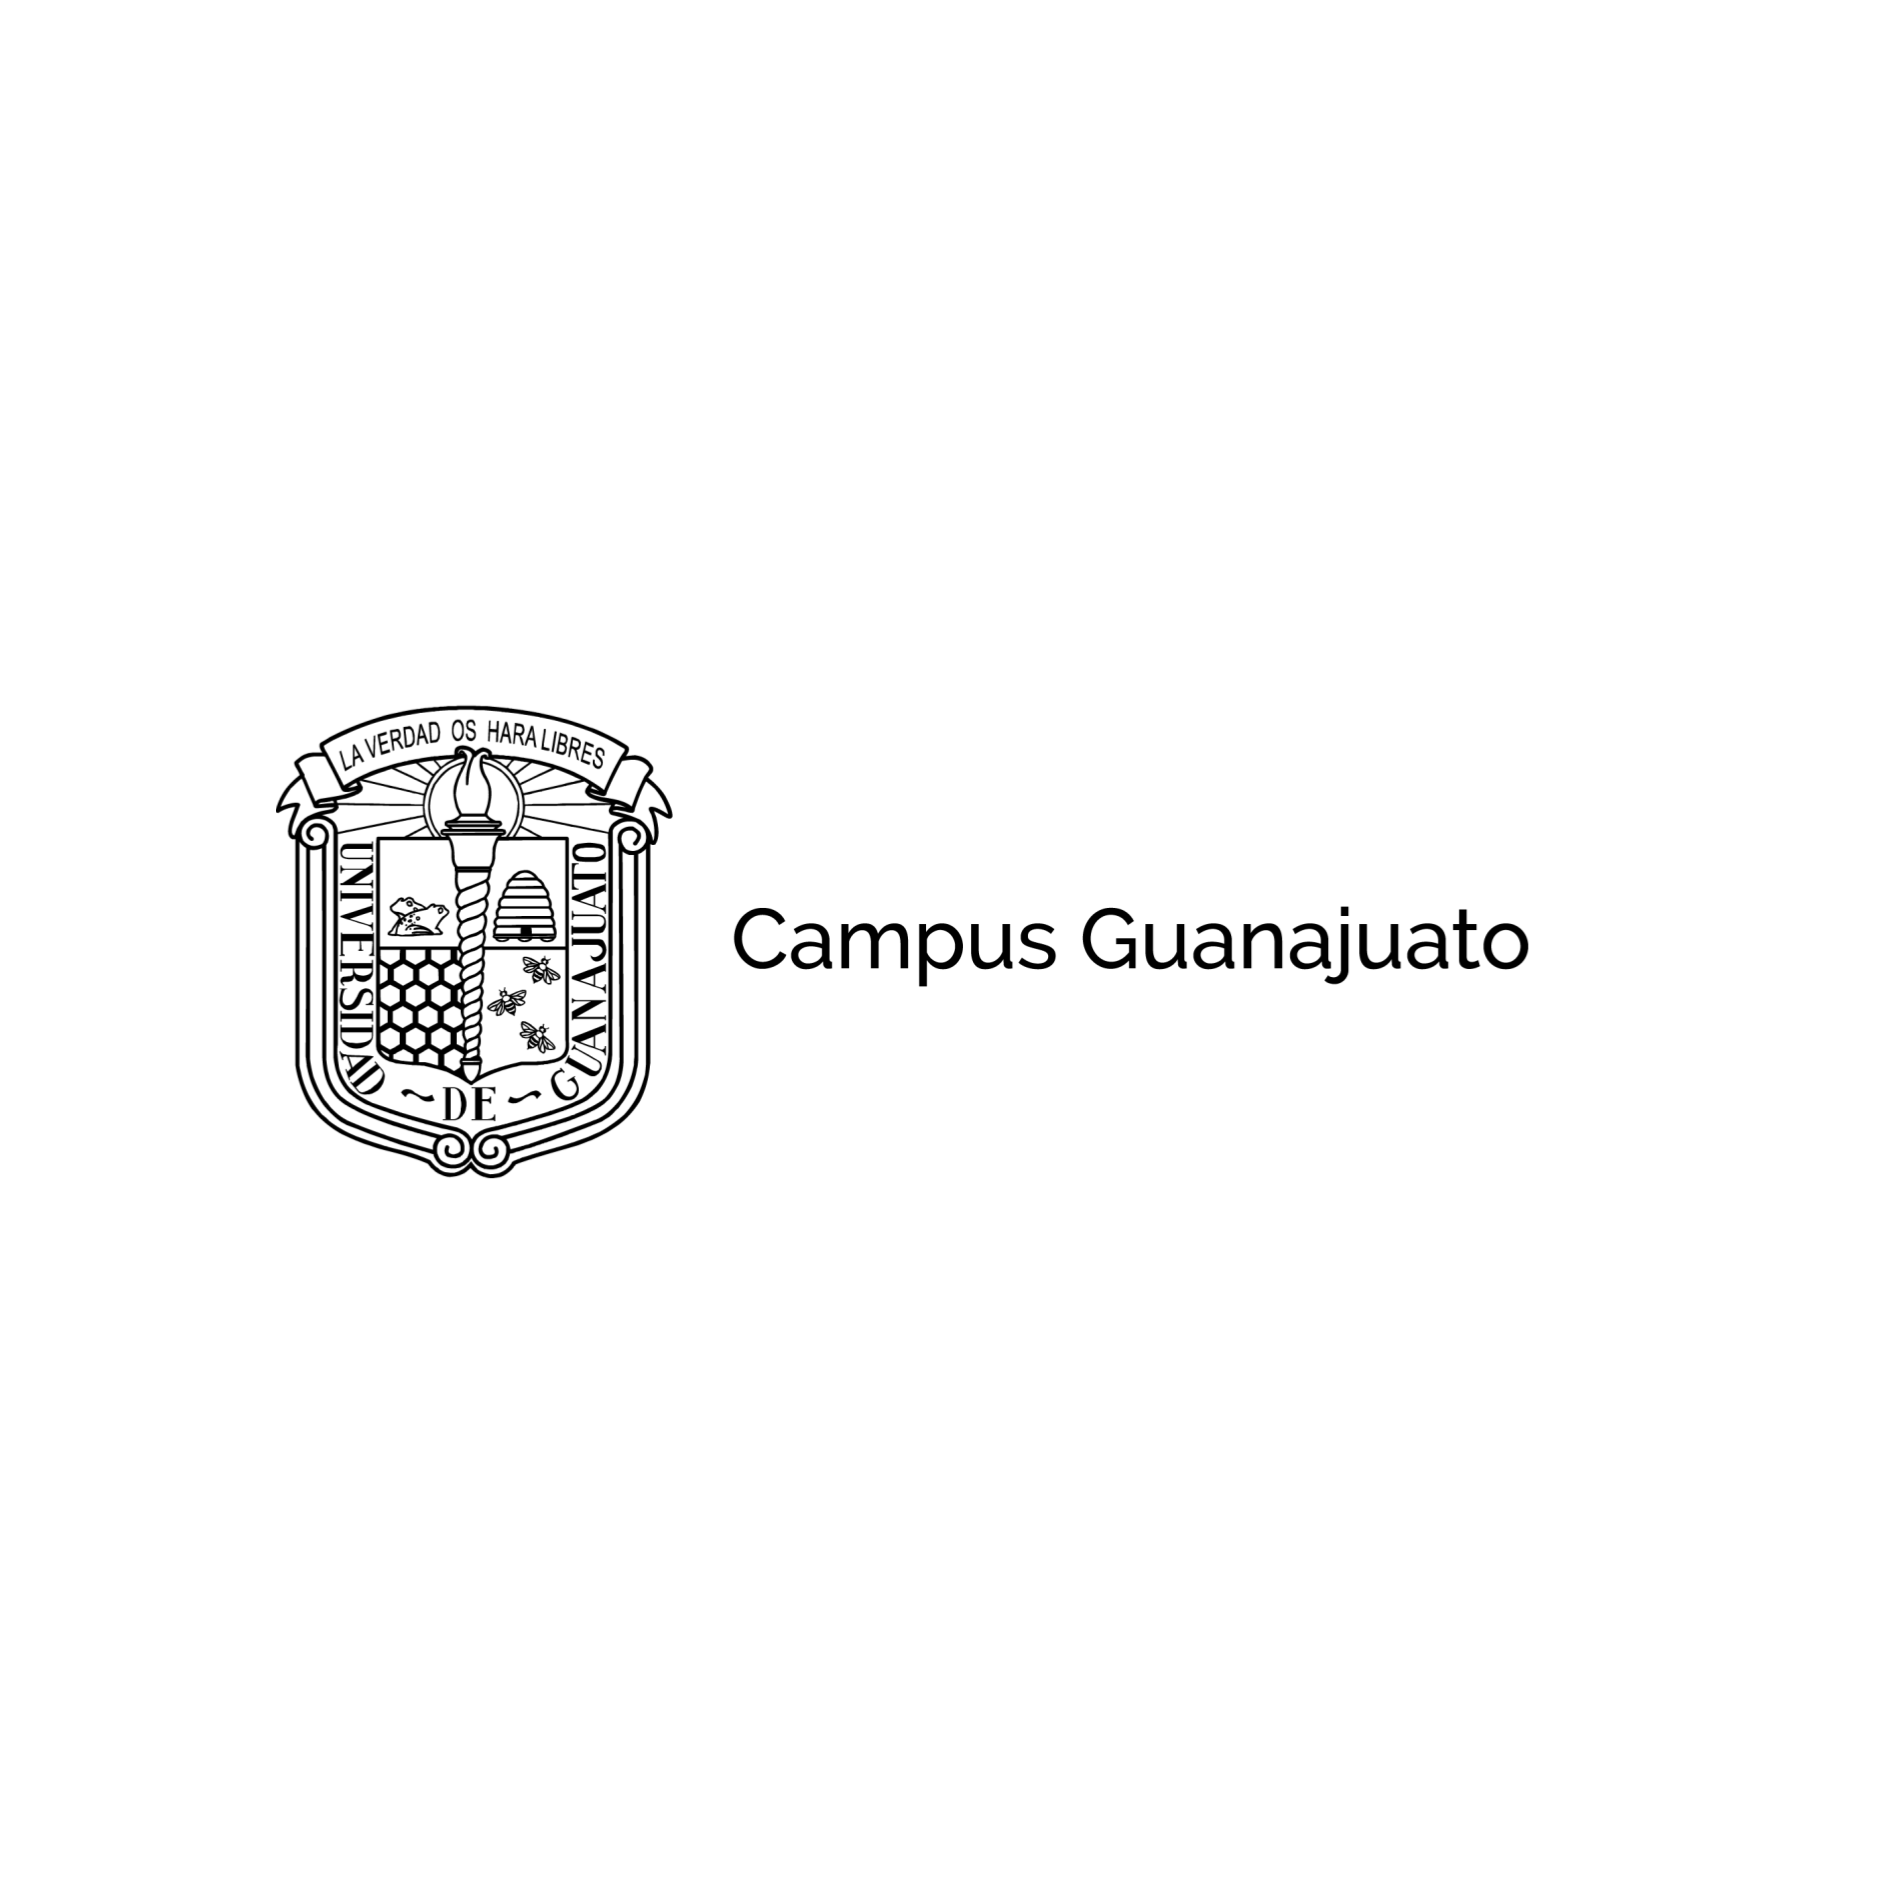 Campus Guanajuato